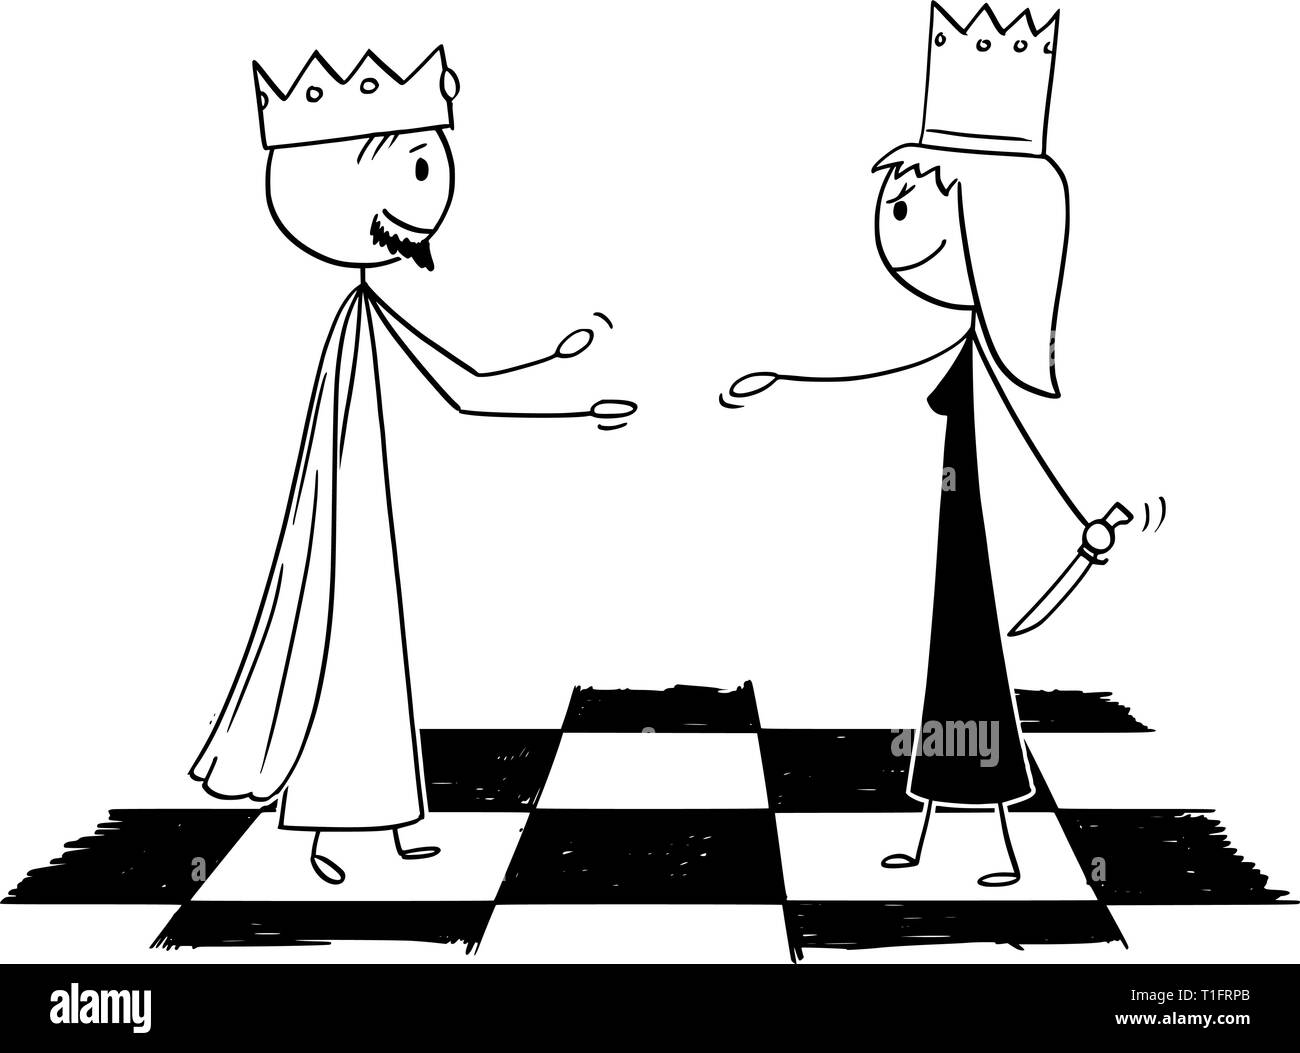 Cartoon stick figure dessin illustration conceptuelle de white chess king est chaleureuse, la reine noire se cacher le couteau et faire semblant d'amitié. Illustration de Vecteur